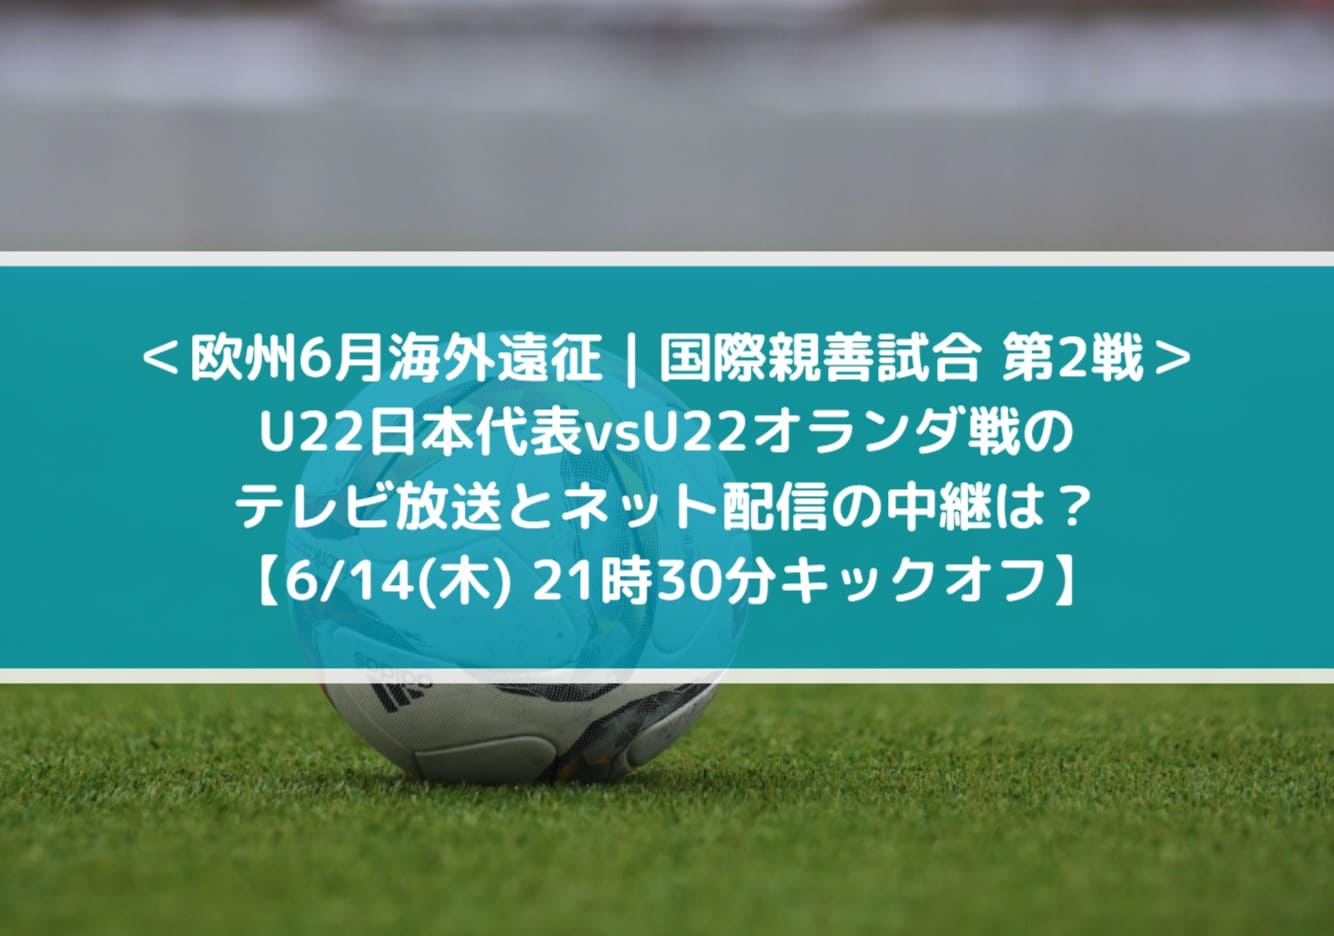 U22日本代表vsオランダ戦のテレビ放送とネット配信の中継は？| 欧州6月海外遠征 | 国際親善試合